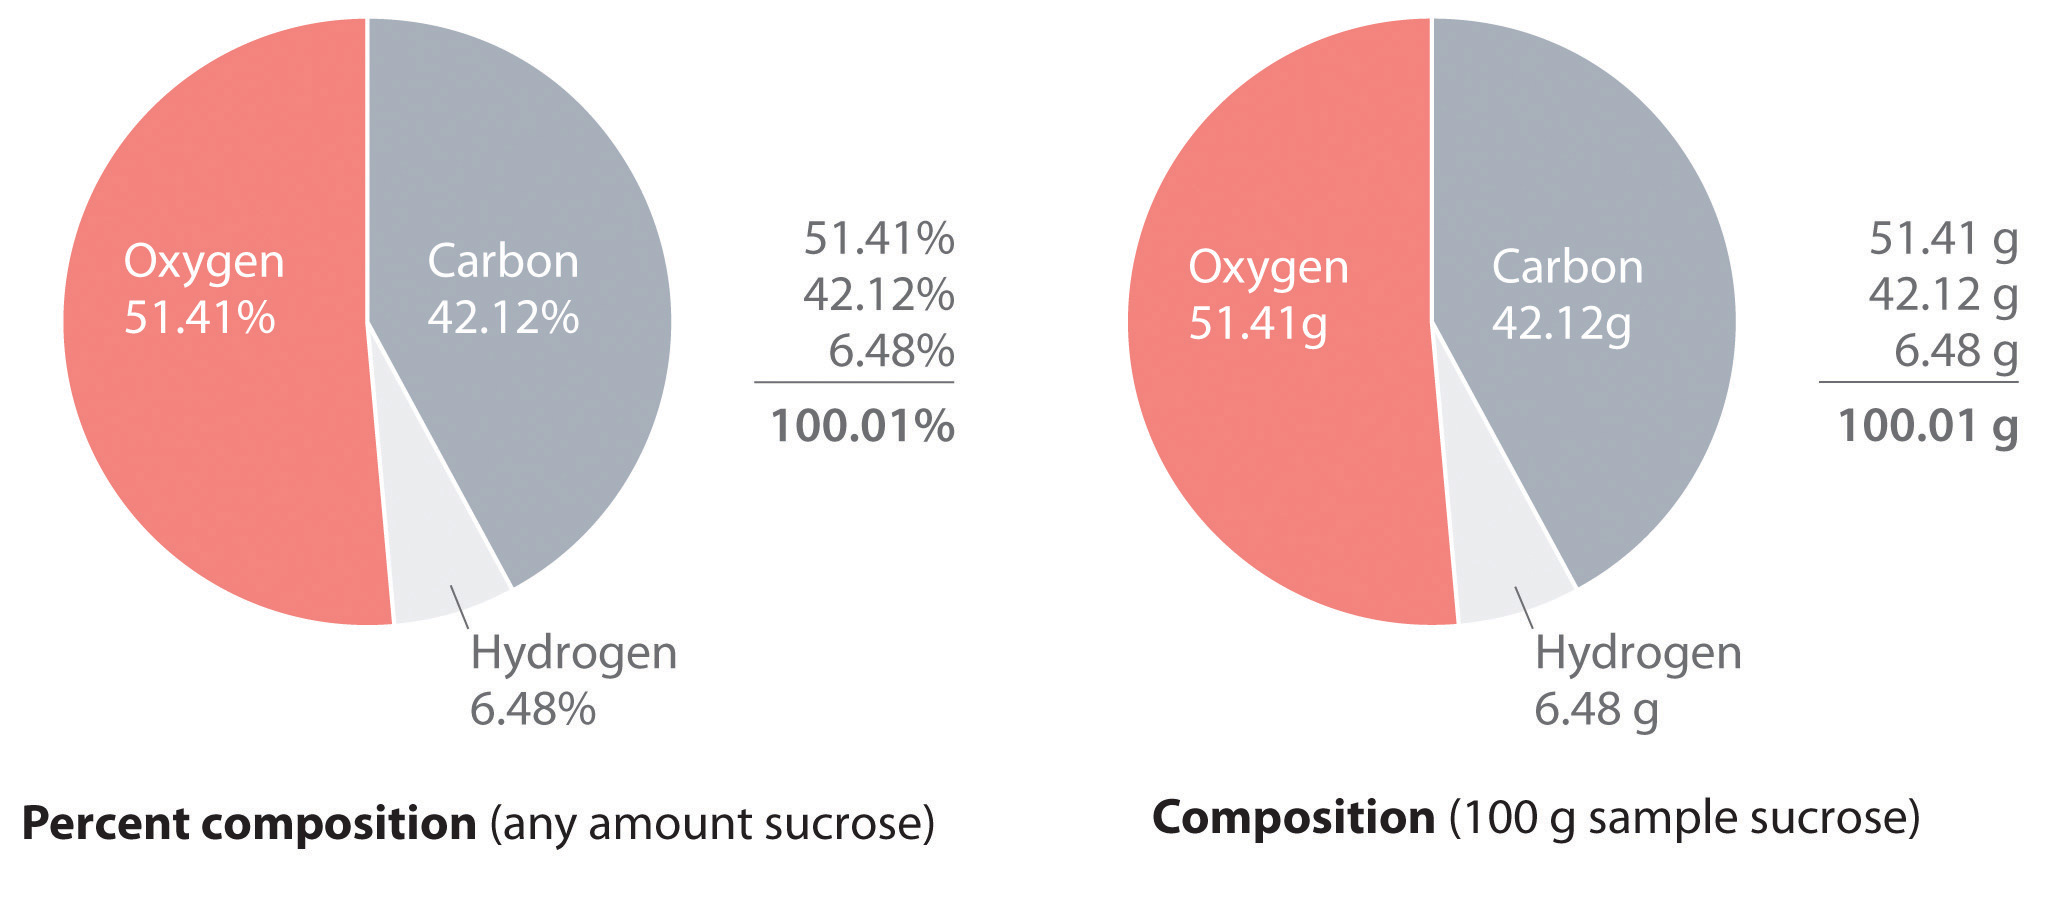 Cualquier cantidad de sacarosa consiste en 51.41% de oxígeno, 42.12% de carbono y 6.48% de hidrógeno.